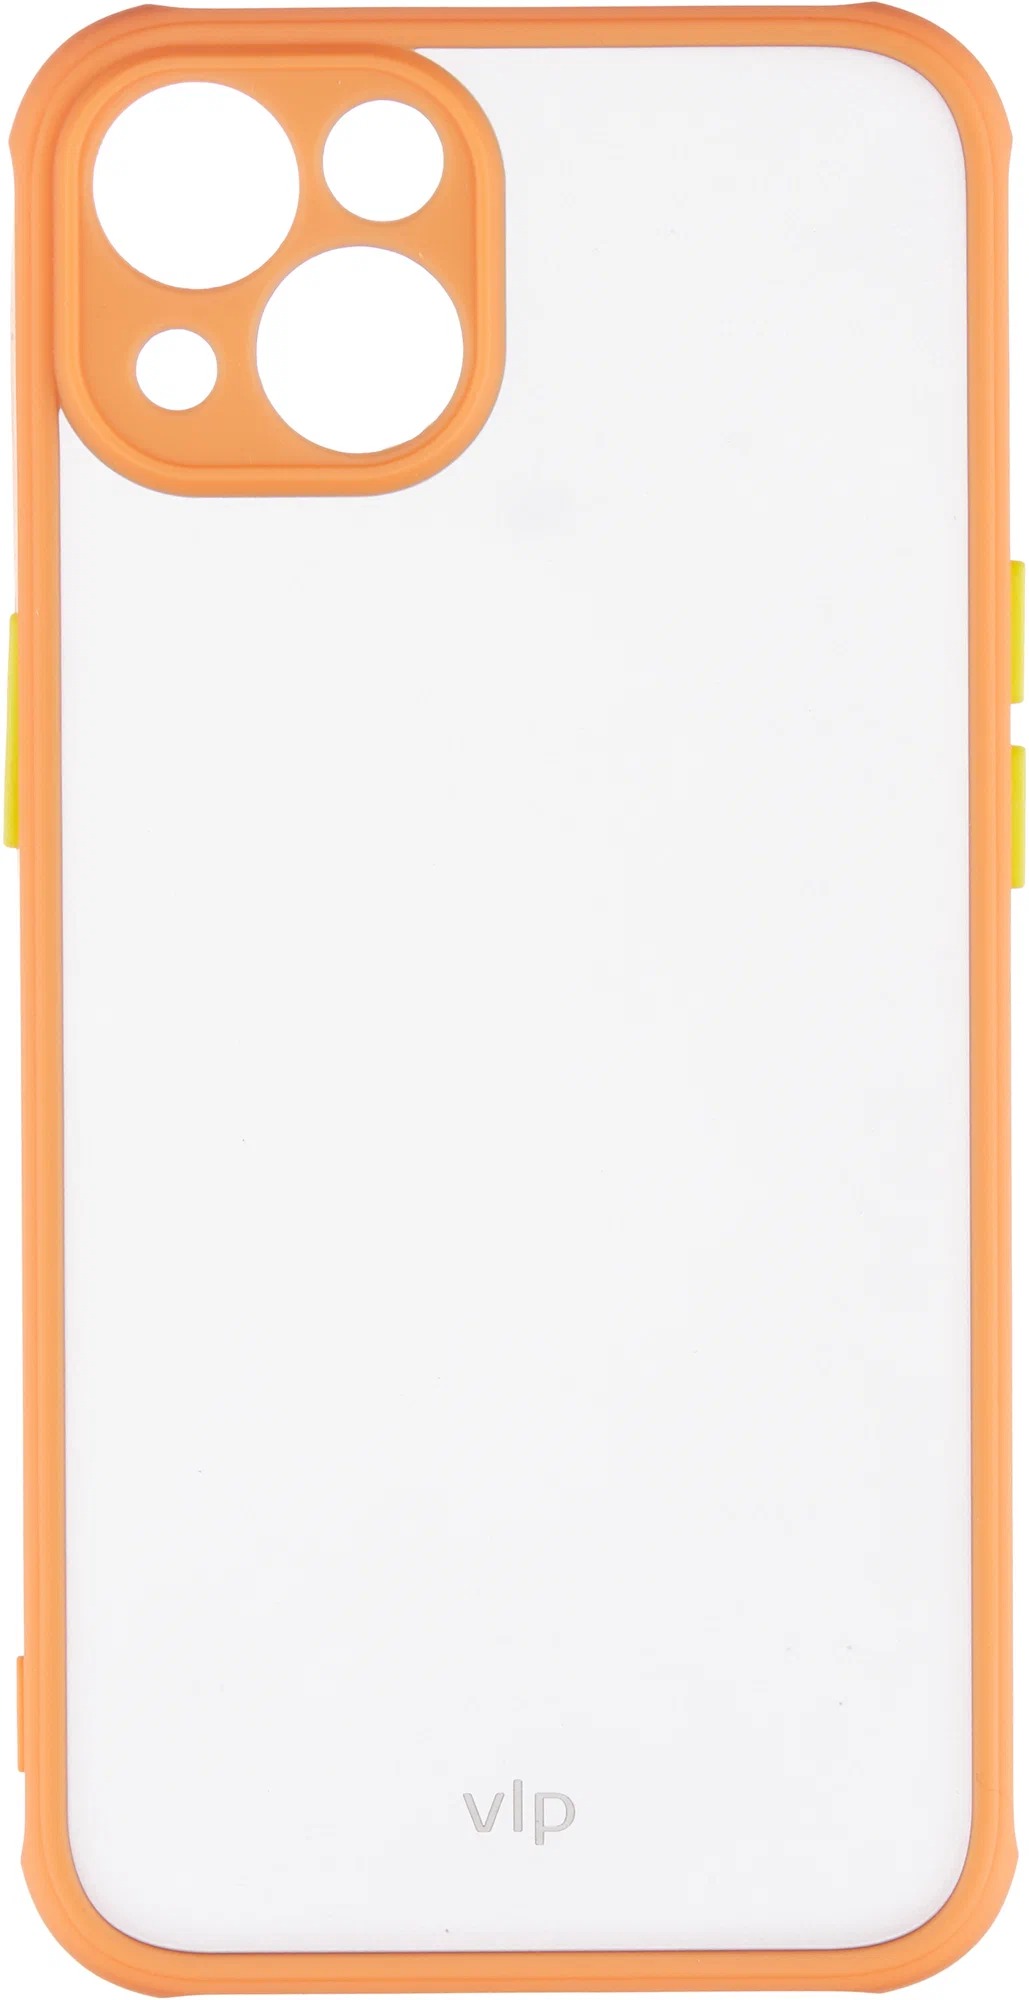 Чехол защитный "vlp" Matte Case для iPhone 13, оранжевый